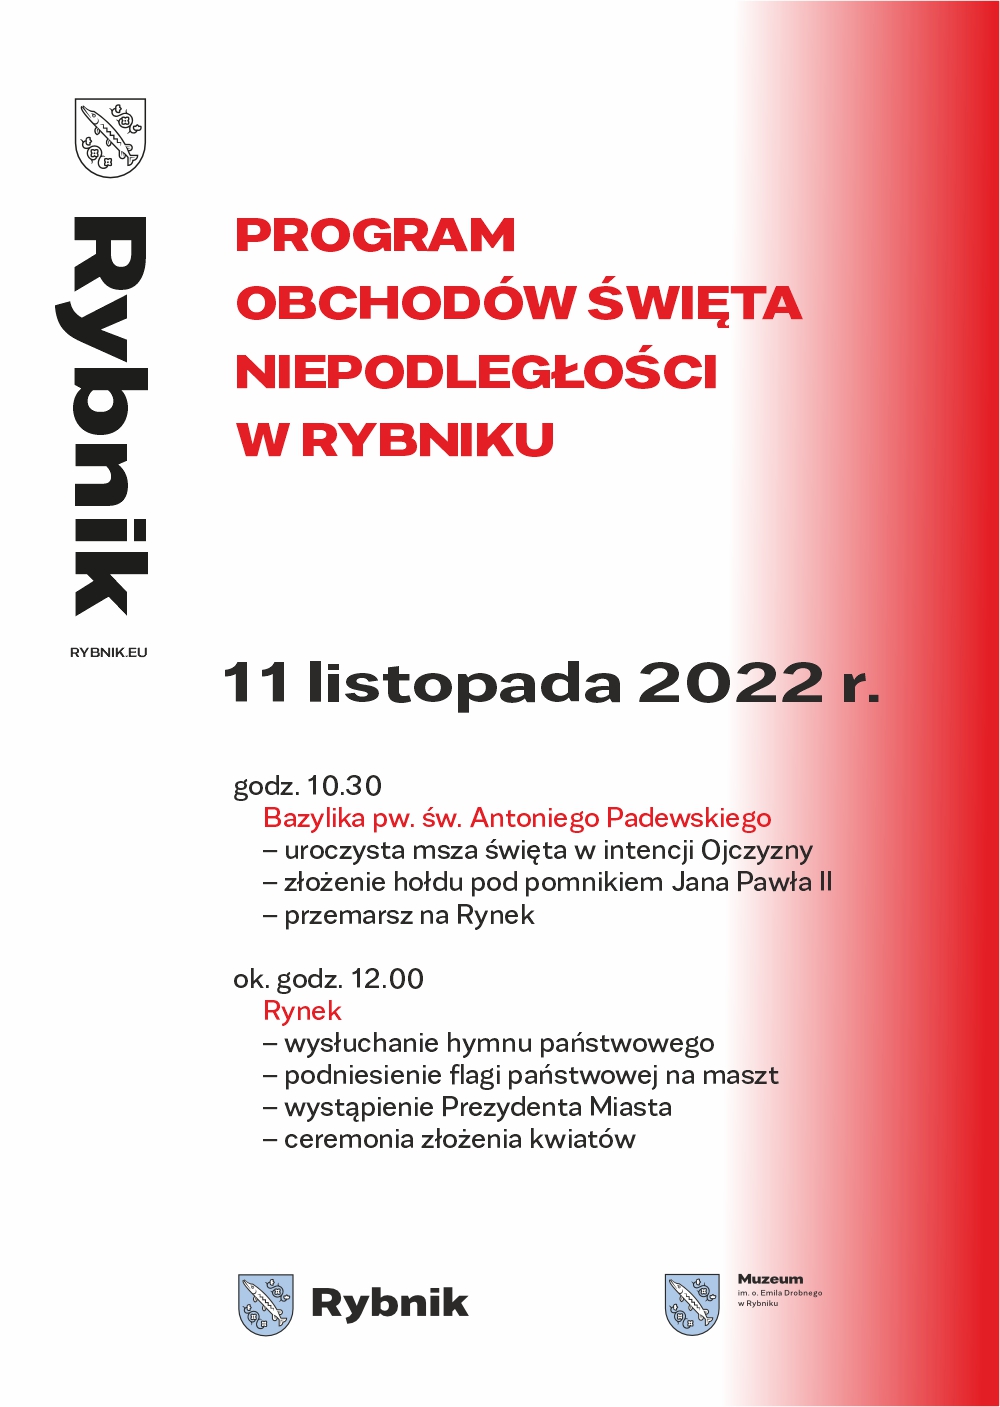 Afisz biało-czerwony z programem obchodów Święta Niepodległości w Rybniku